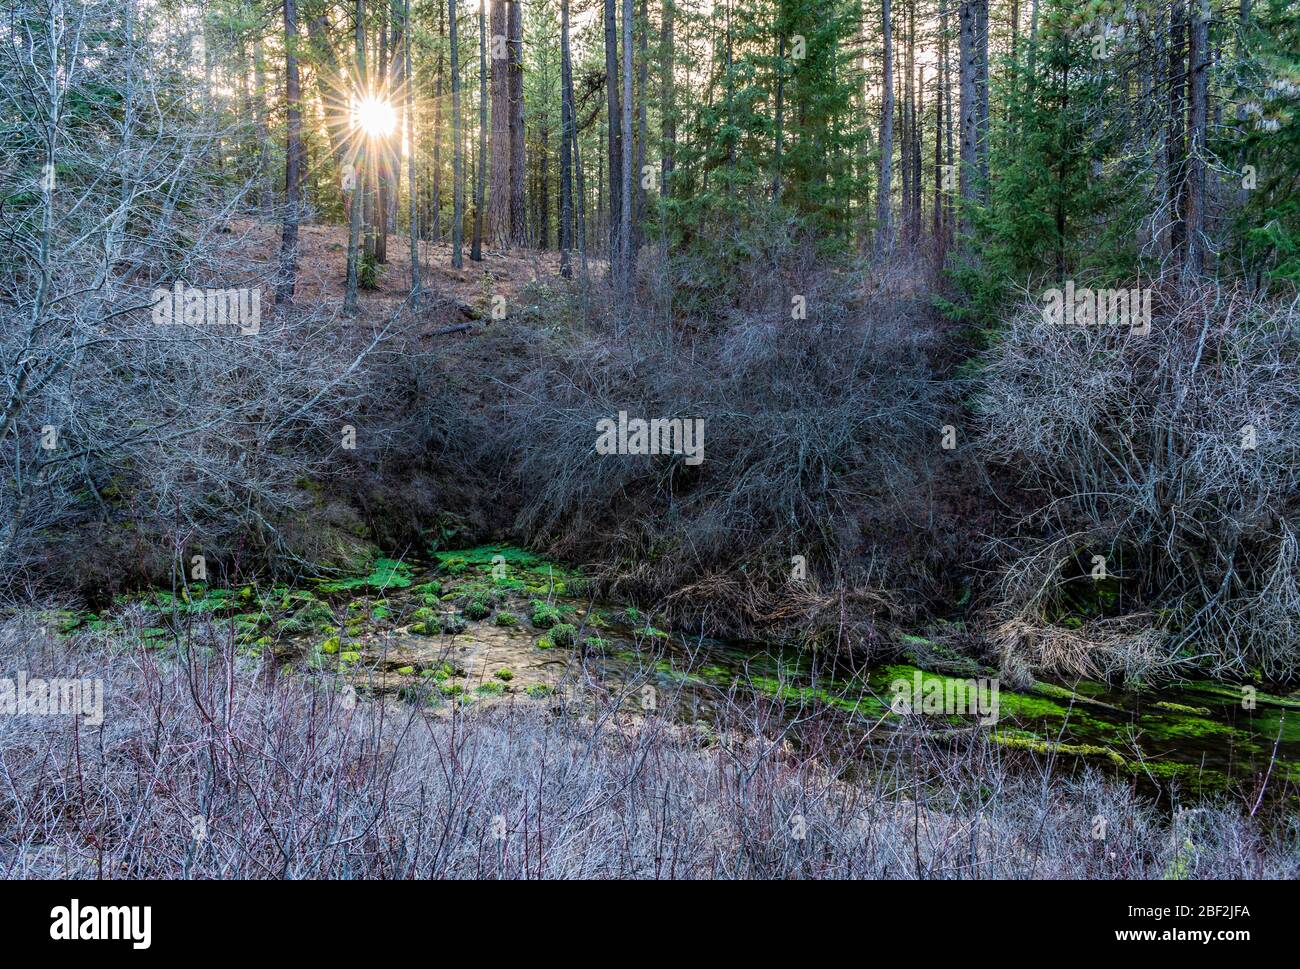 Piante verdi bizzarre e luminose alle sorgenti del fiume Metolius vicino alle Sorelle nell'Oregon centrale. Foto Stock